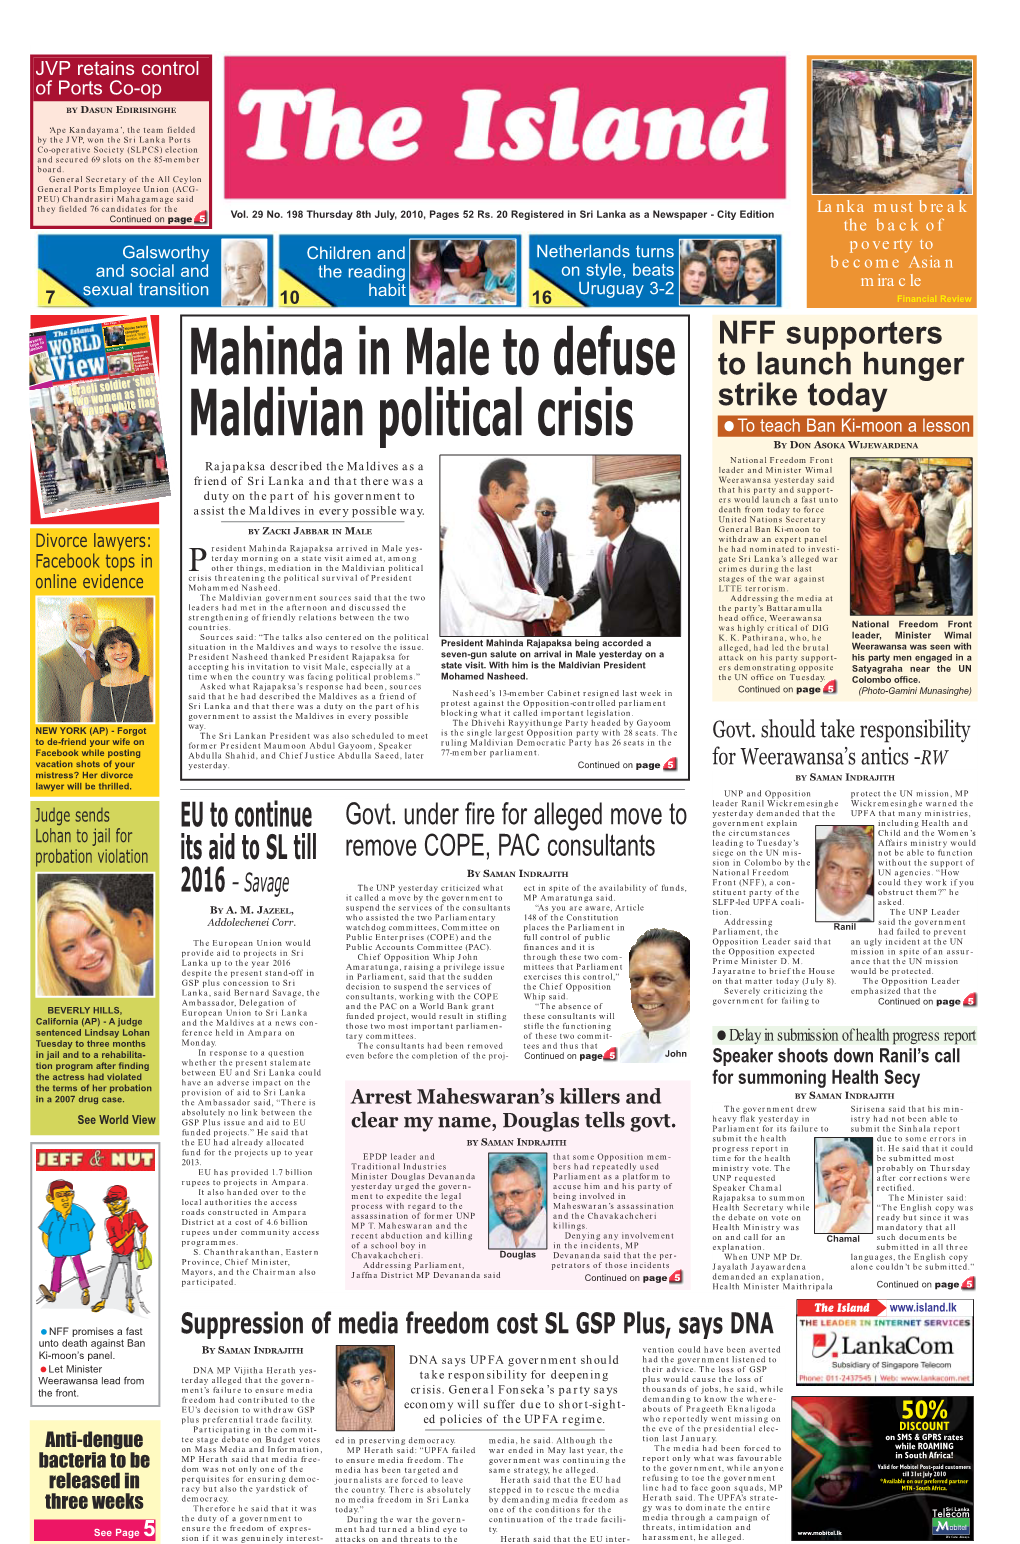 Mahinda in Male to Defuse Maldivian Political Crisis